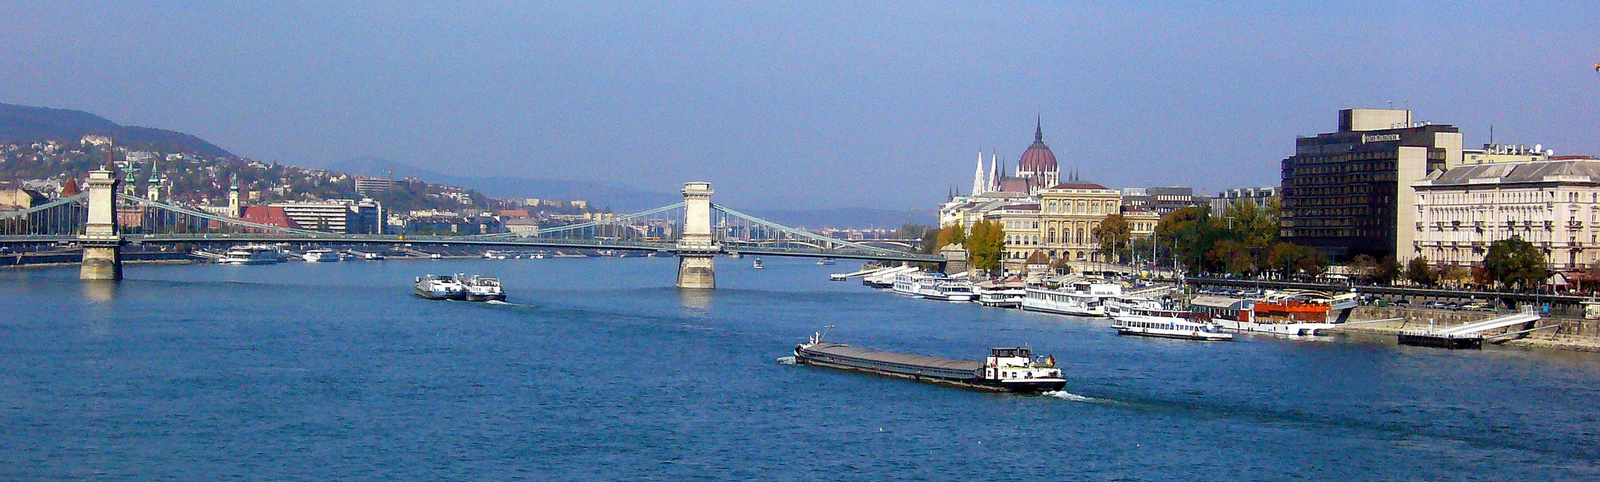 Duna, Budapest